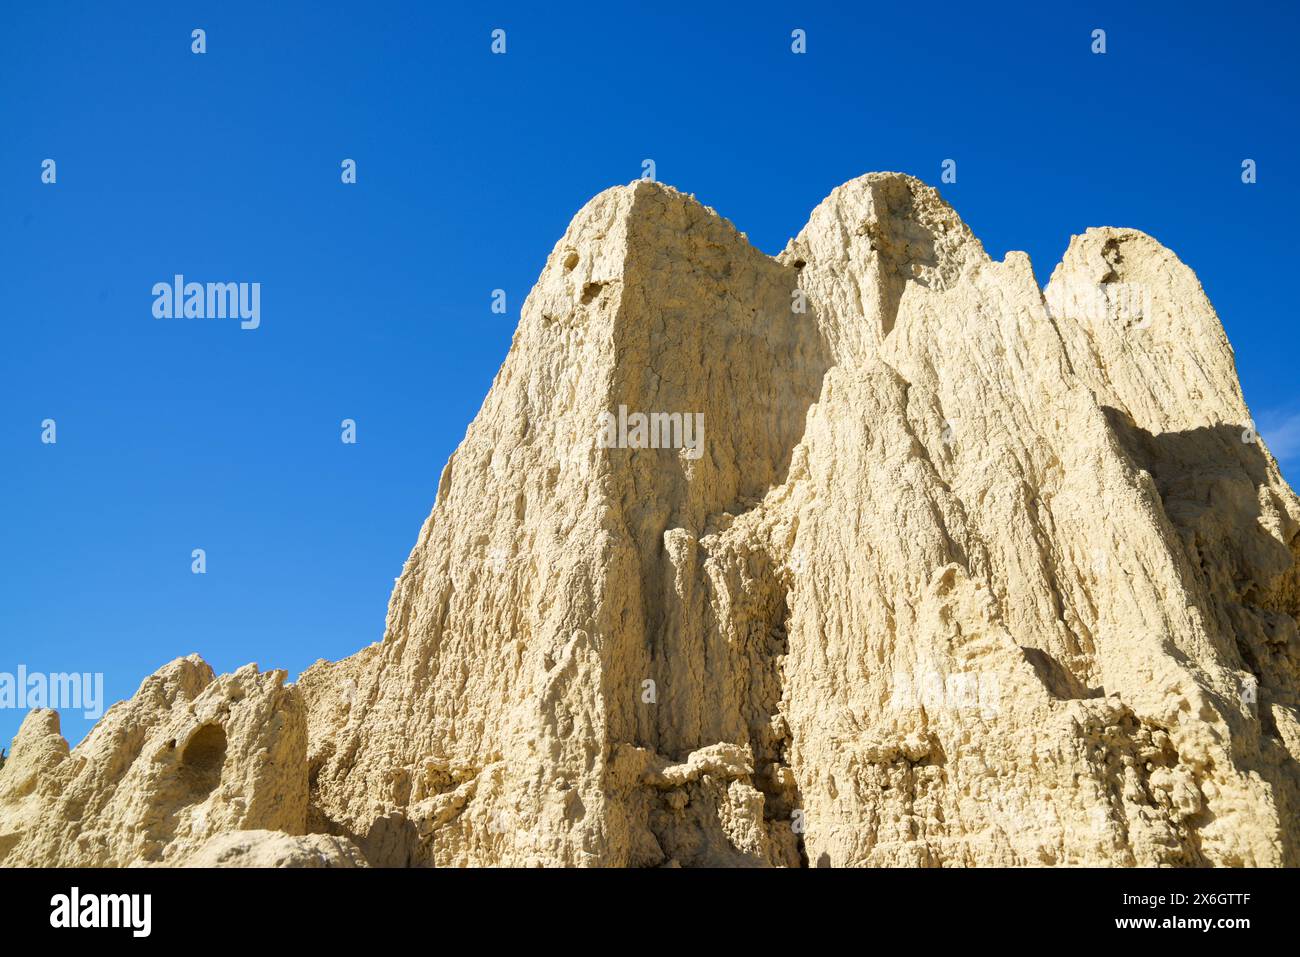 Formazione geologica, nota come Aguarales de Valpalmas, nella provincia di Saragozza, Aragona in Spagna. Foto Stock